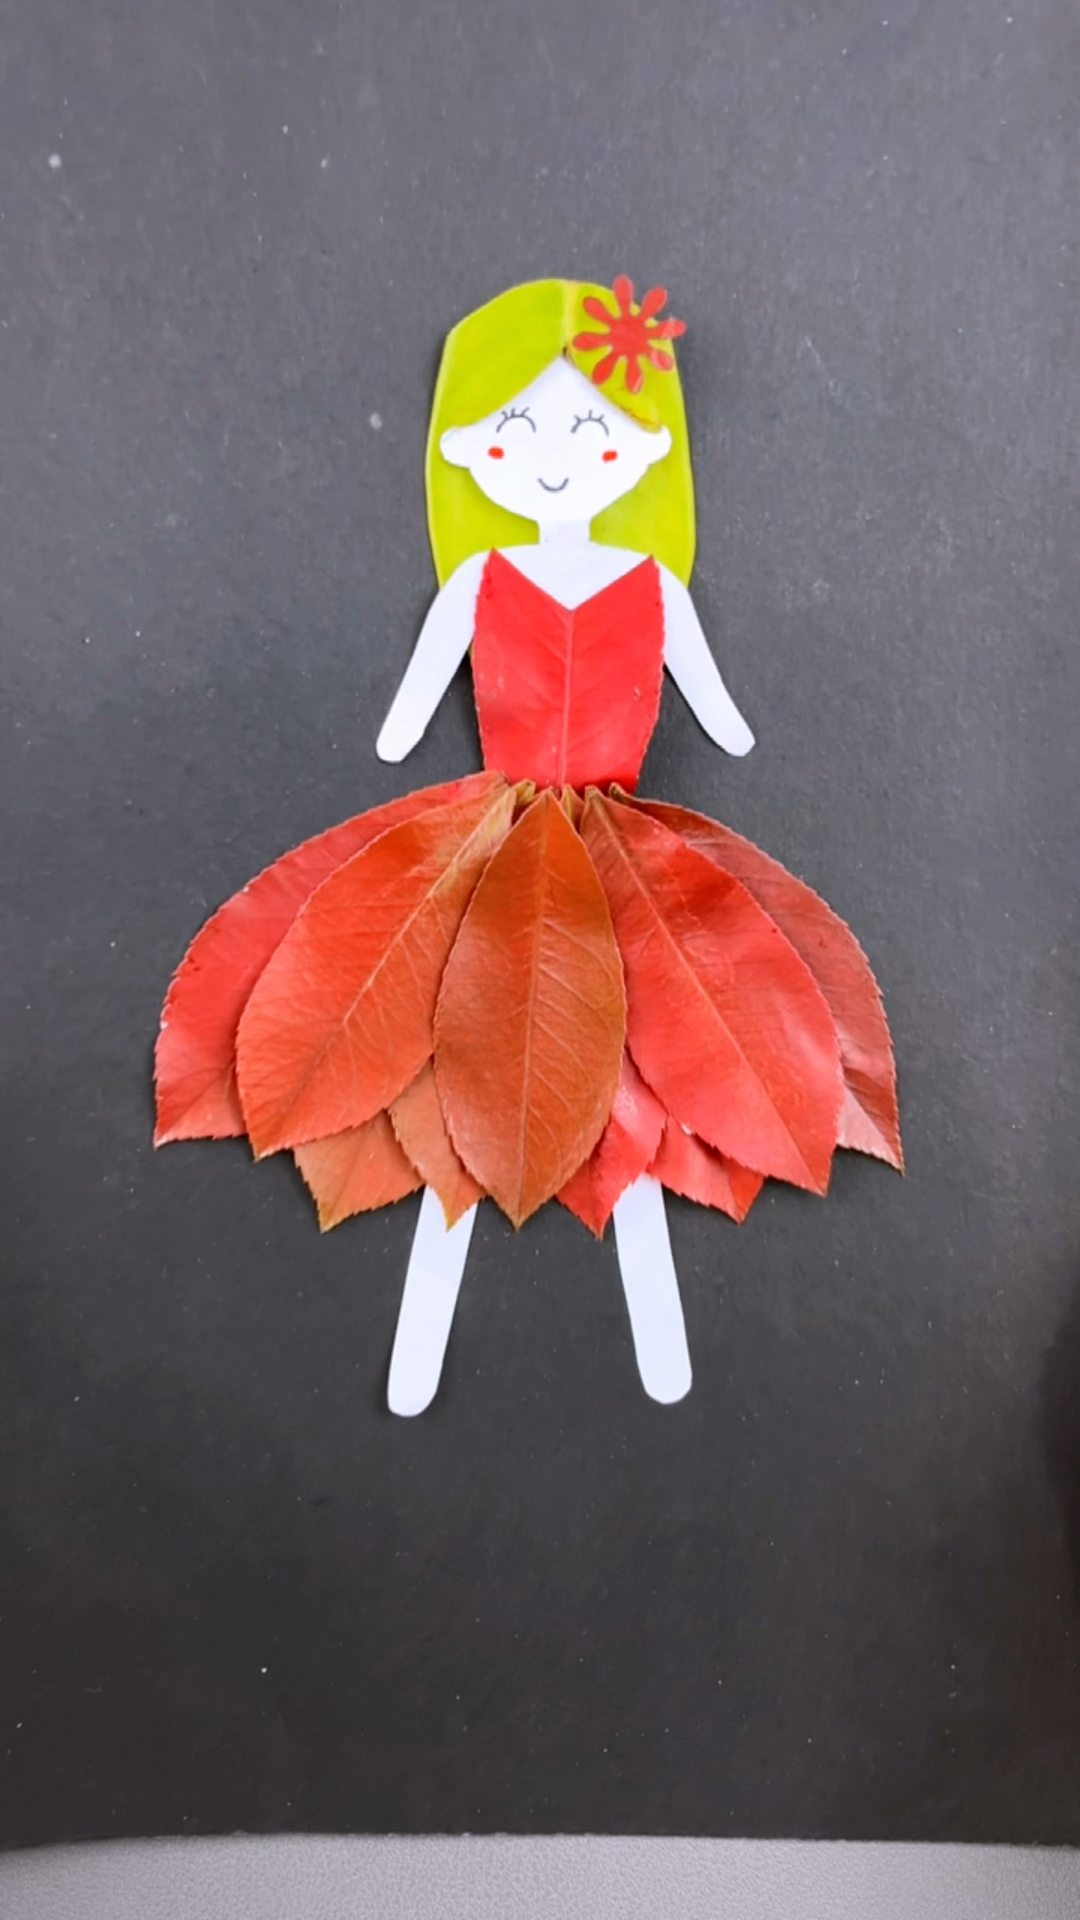 又做了一款超级漂亮的小公主树叶贴画,赶快帮小朋友收藏起来